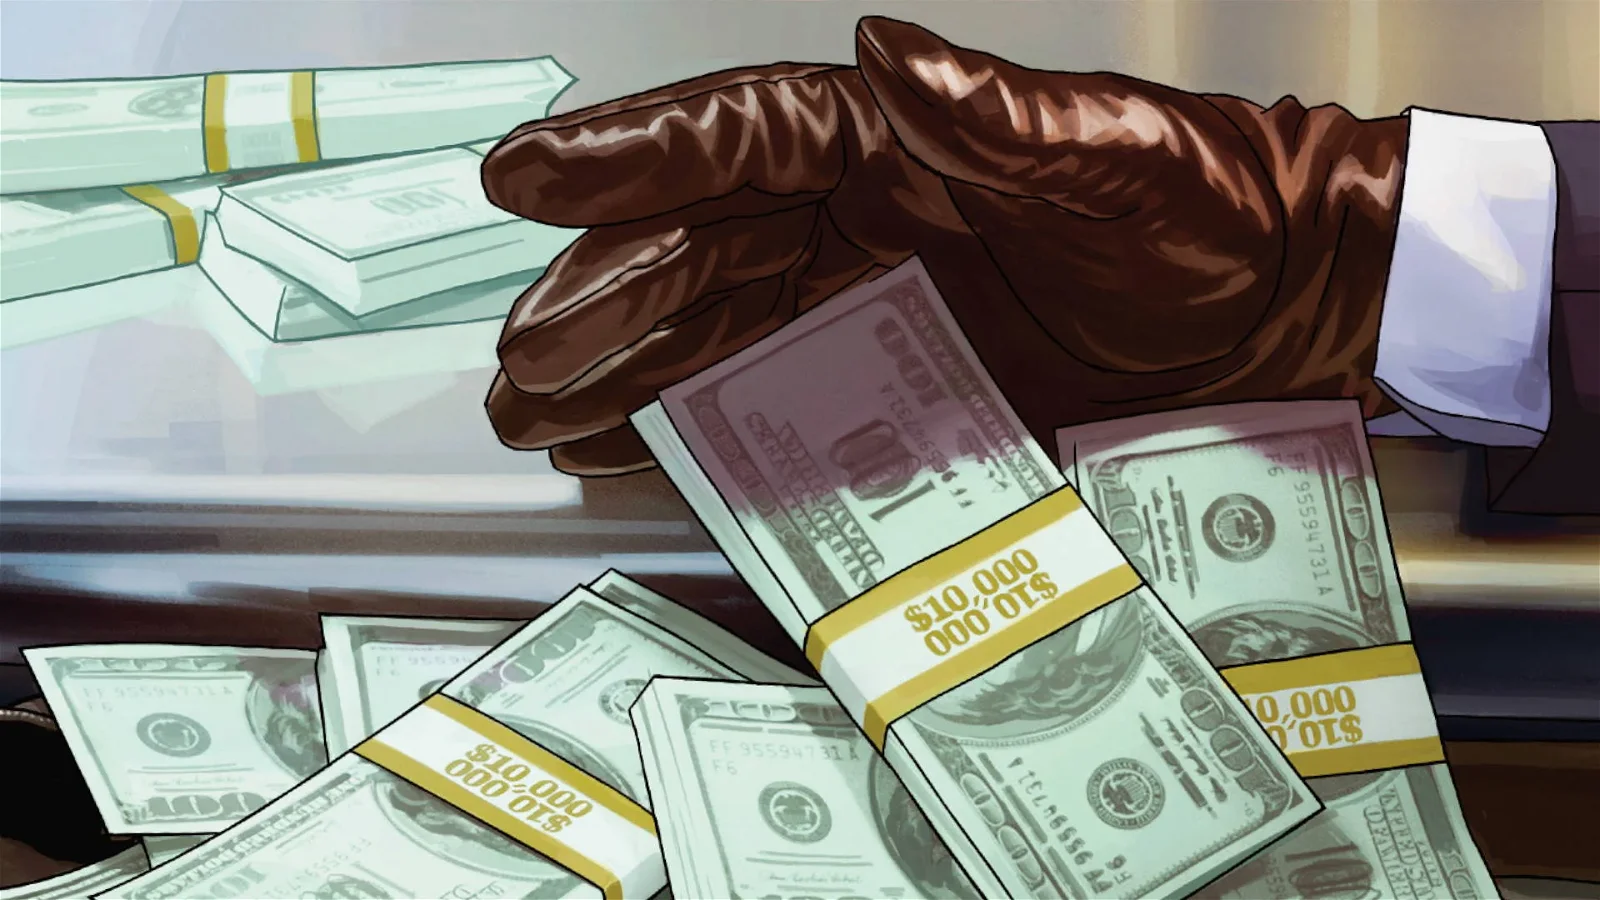 Le valute virtuali acquistabili con soldi veri sono «finzioni», per Take Two